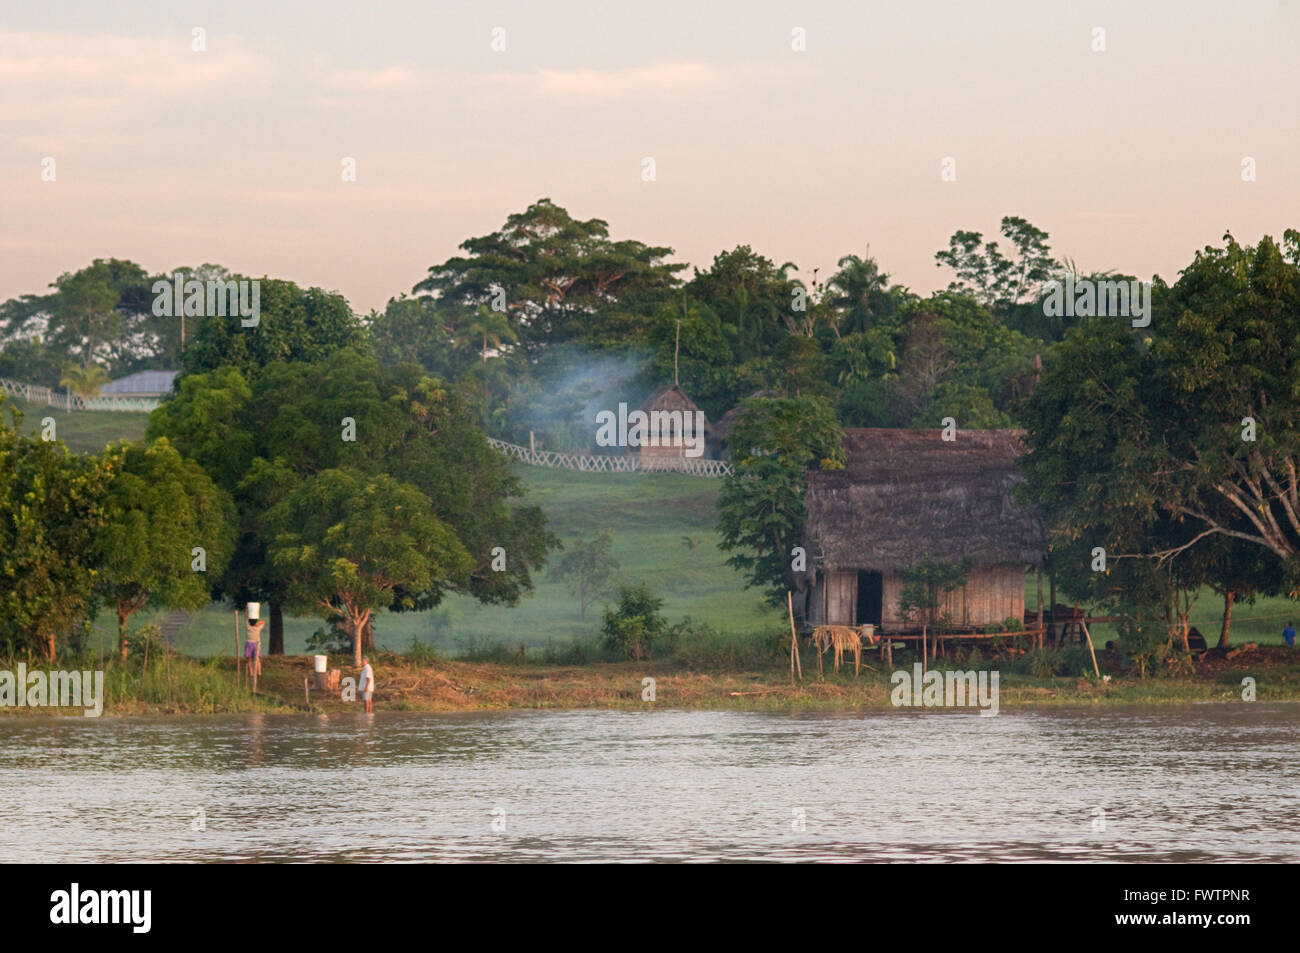 Amazonas-Regenwald: Expedition mit dem Boot entlang des Amazonas-Flusses in der Nähe von Iquitos, Loreto, Peru. Navigation einer der Nebenflüsse des Amazonas nach Iquitos etwa 40 Kilometer in der Nähe der Stadt von Indiana. Gruppierten kleine Hütten am Rand einer der Nebenflüsse des Amazonas Stockfoto